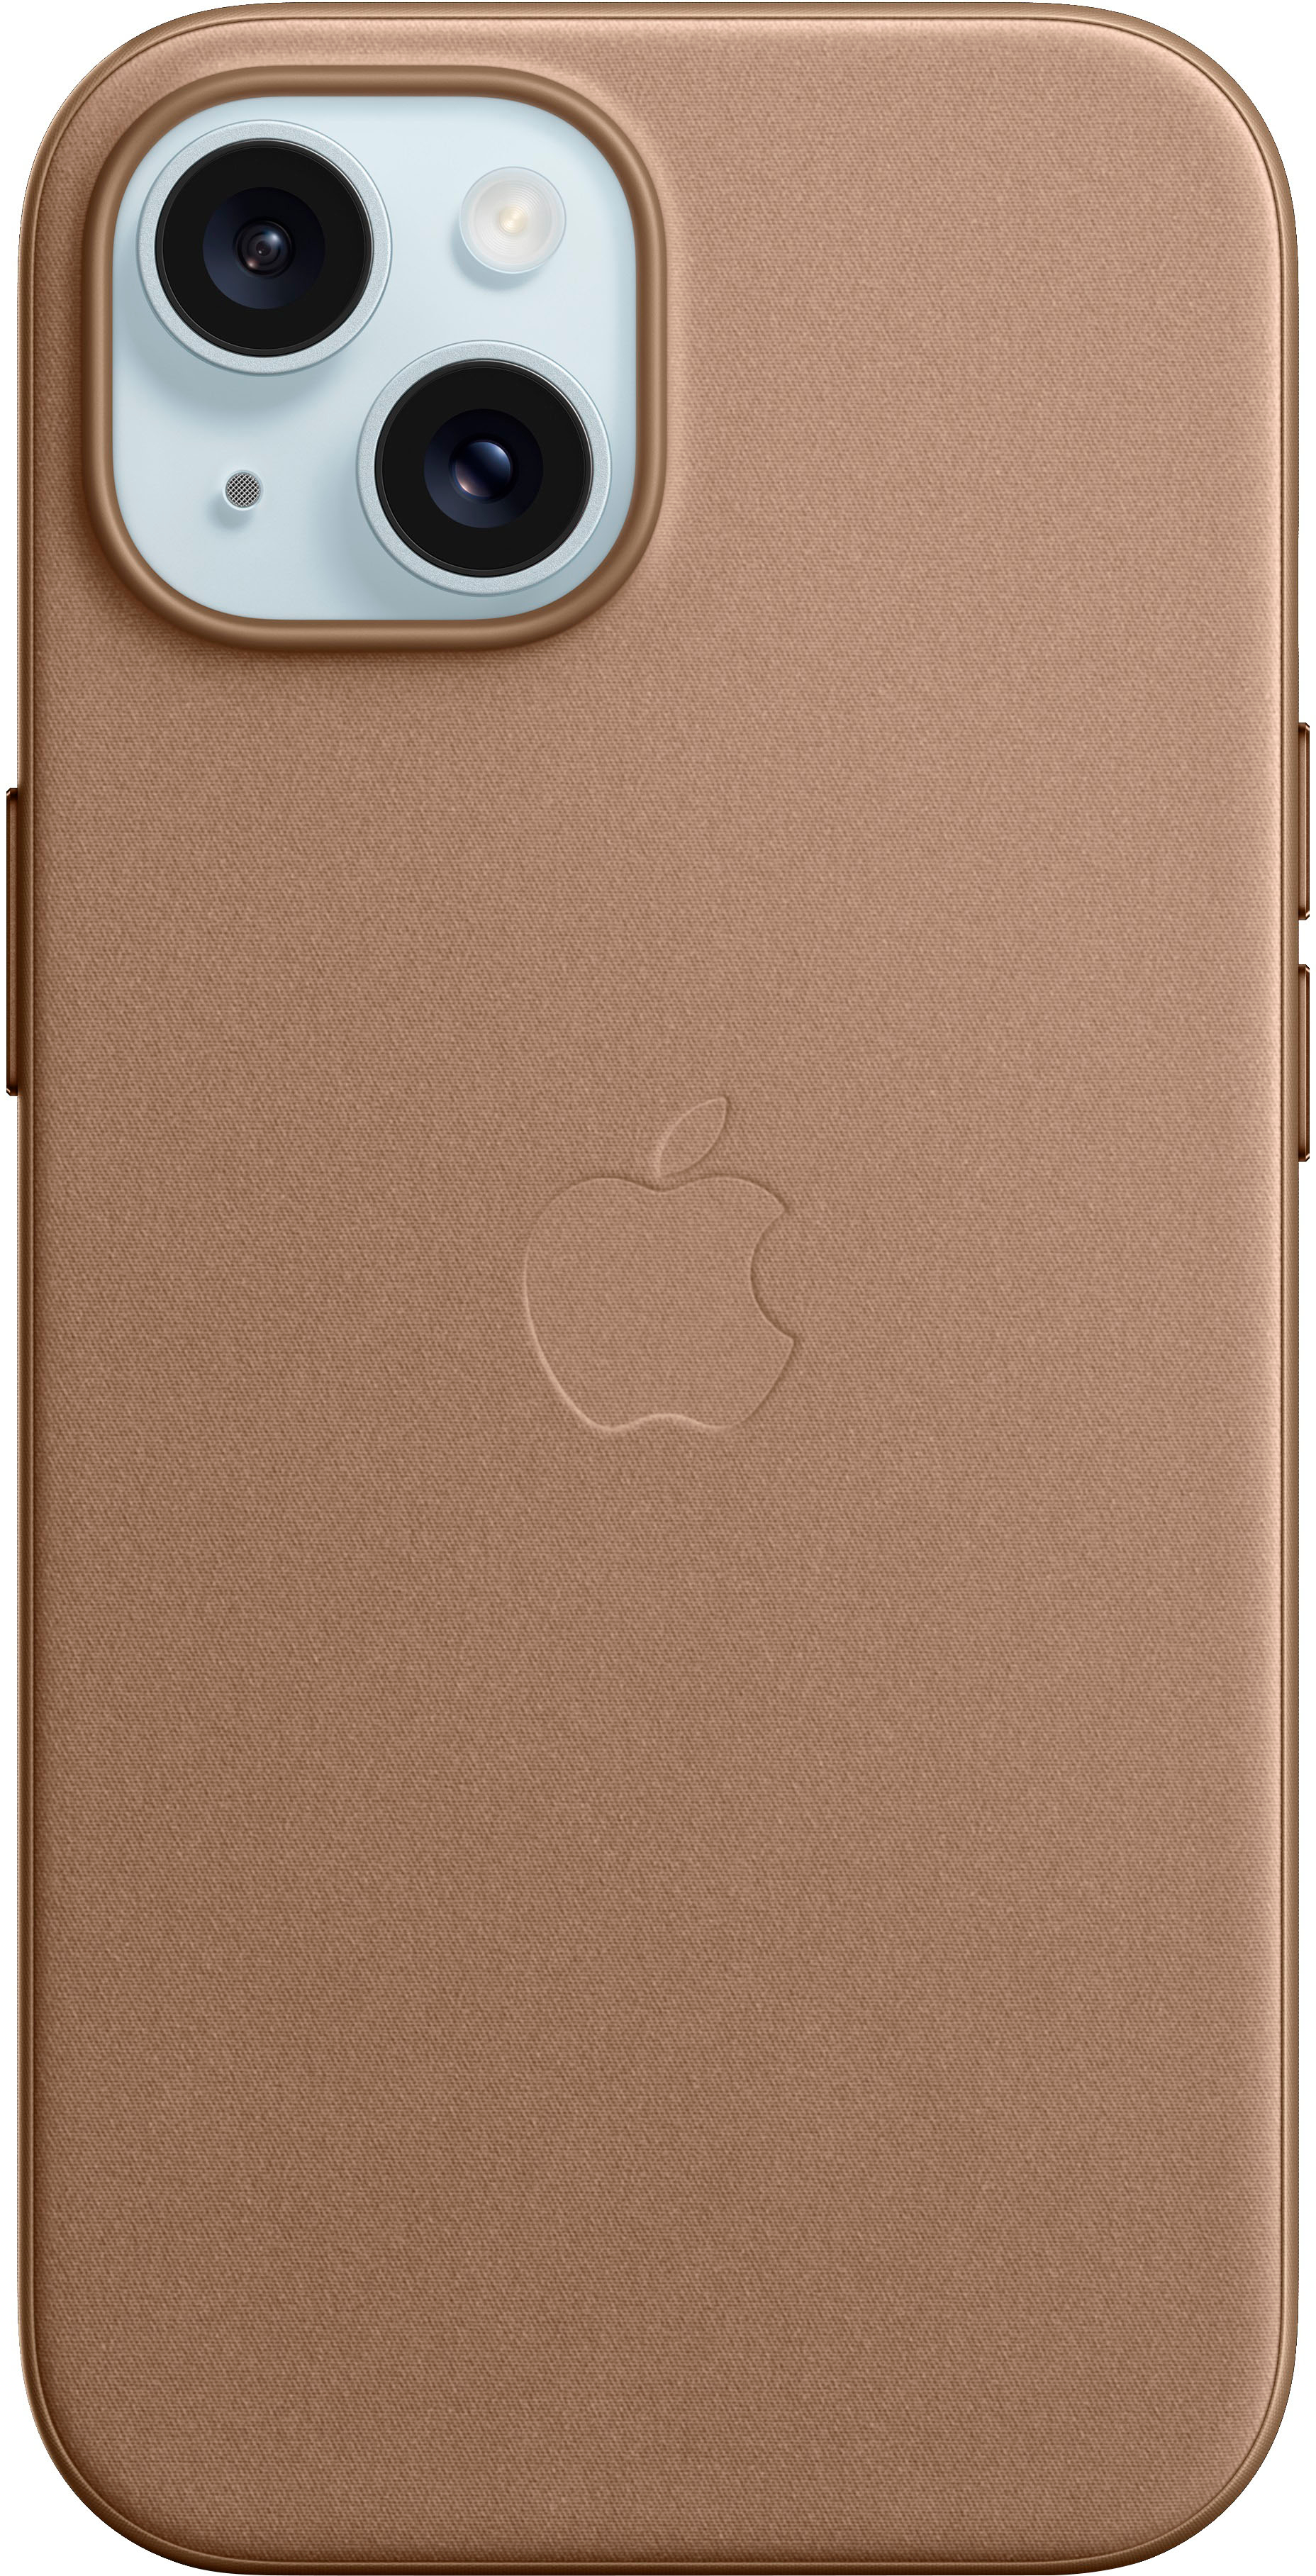 Speck Presidio2 Grip iPhone 12 mini Cases Best iPhone 12 mini - $44.99